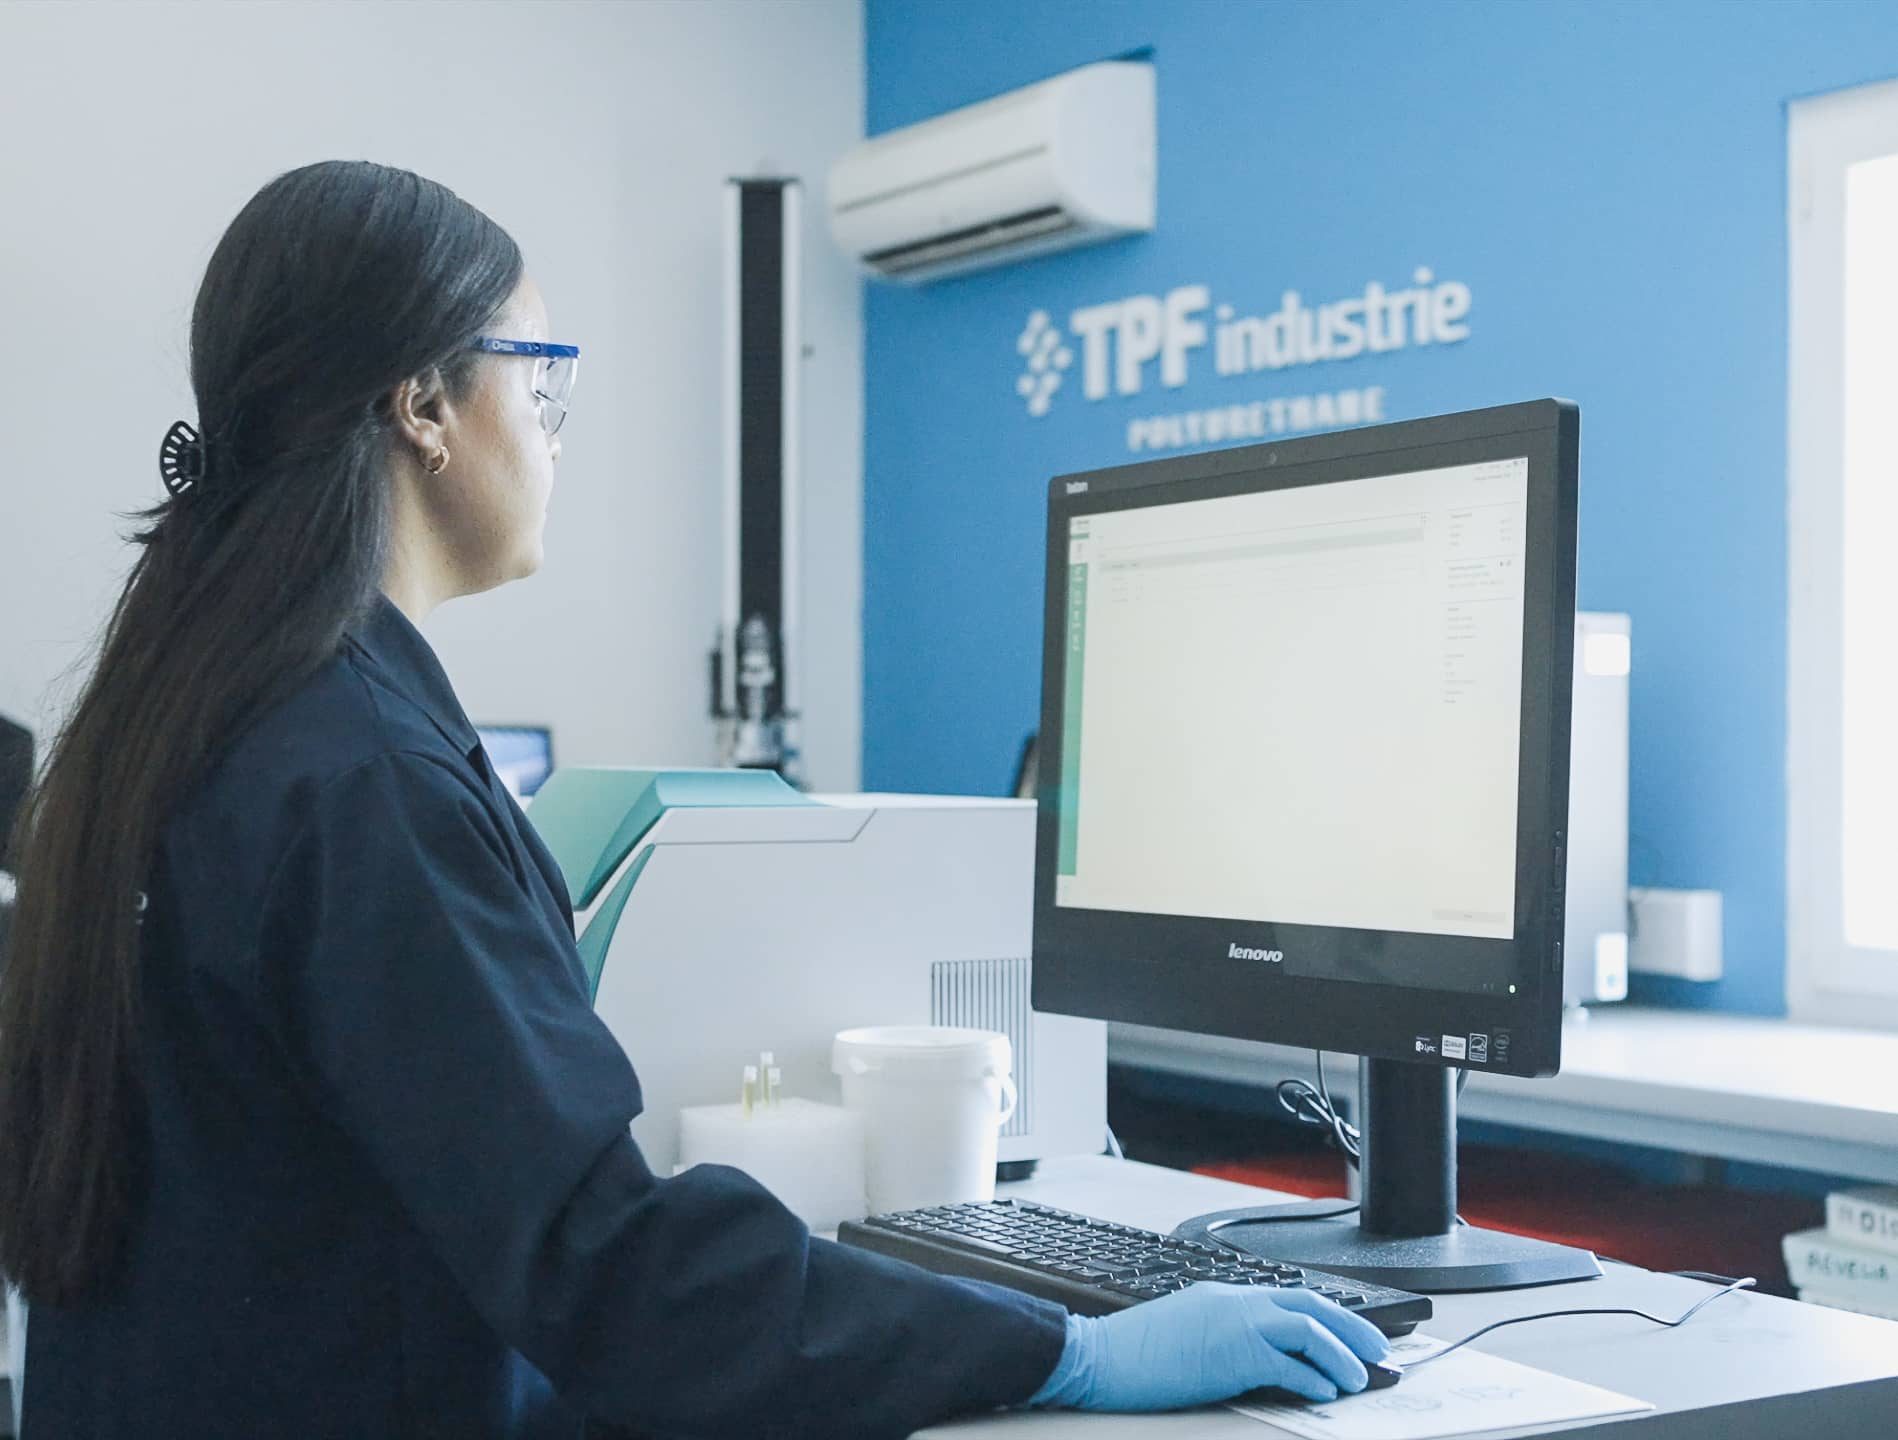 Ingénieure au travail au sein du laboratoire d'essai, département Recherche et Développement de l'usine TPF Industrie